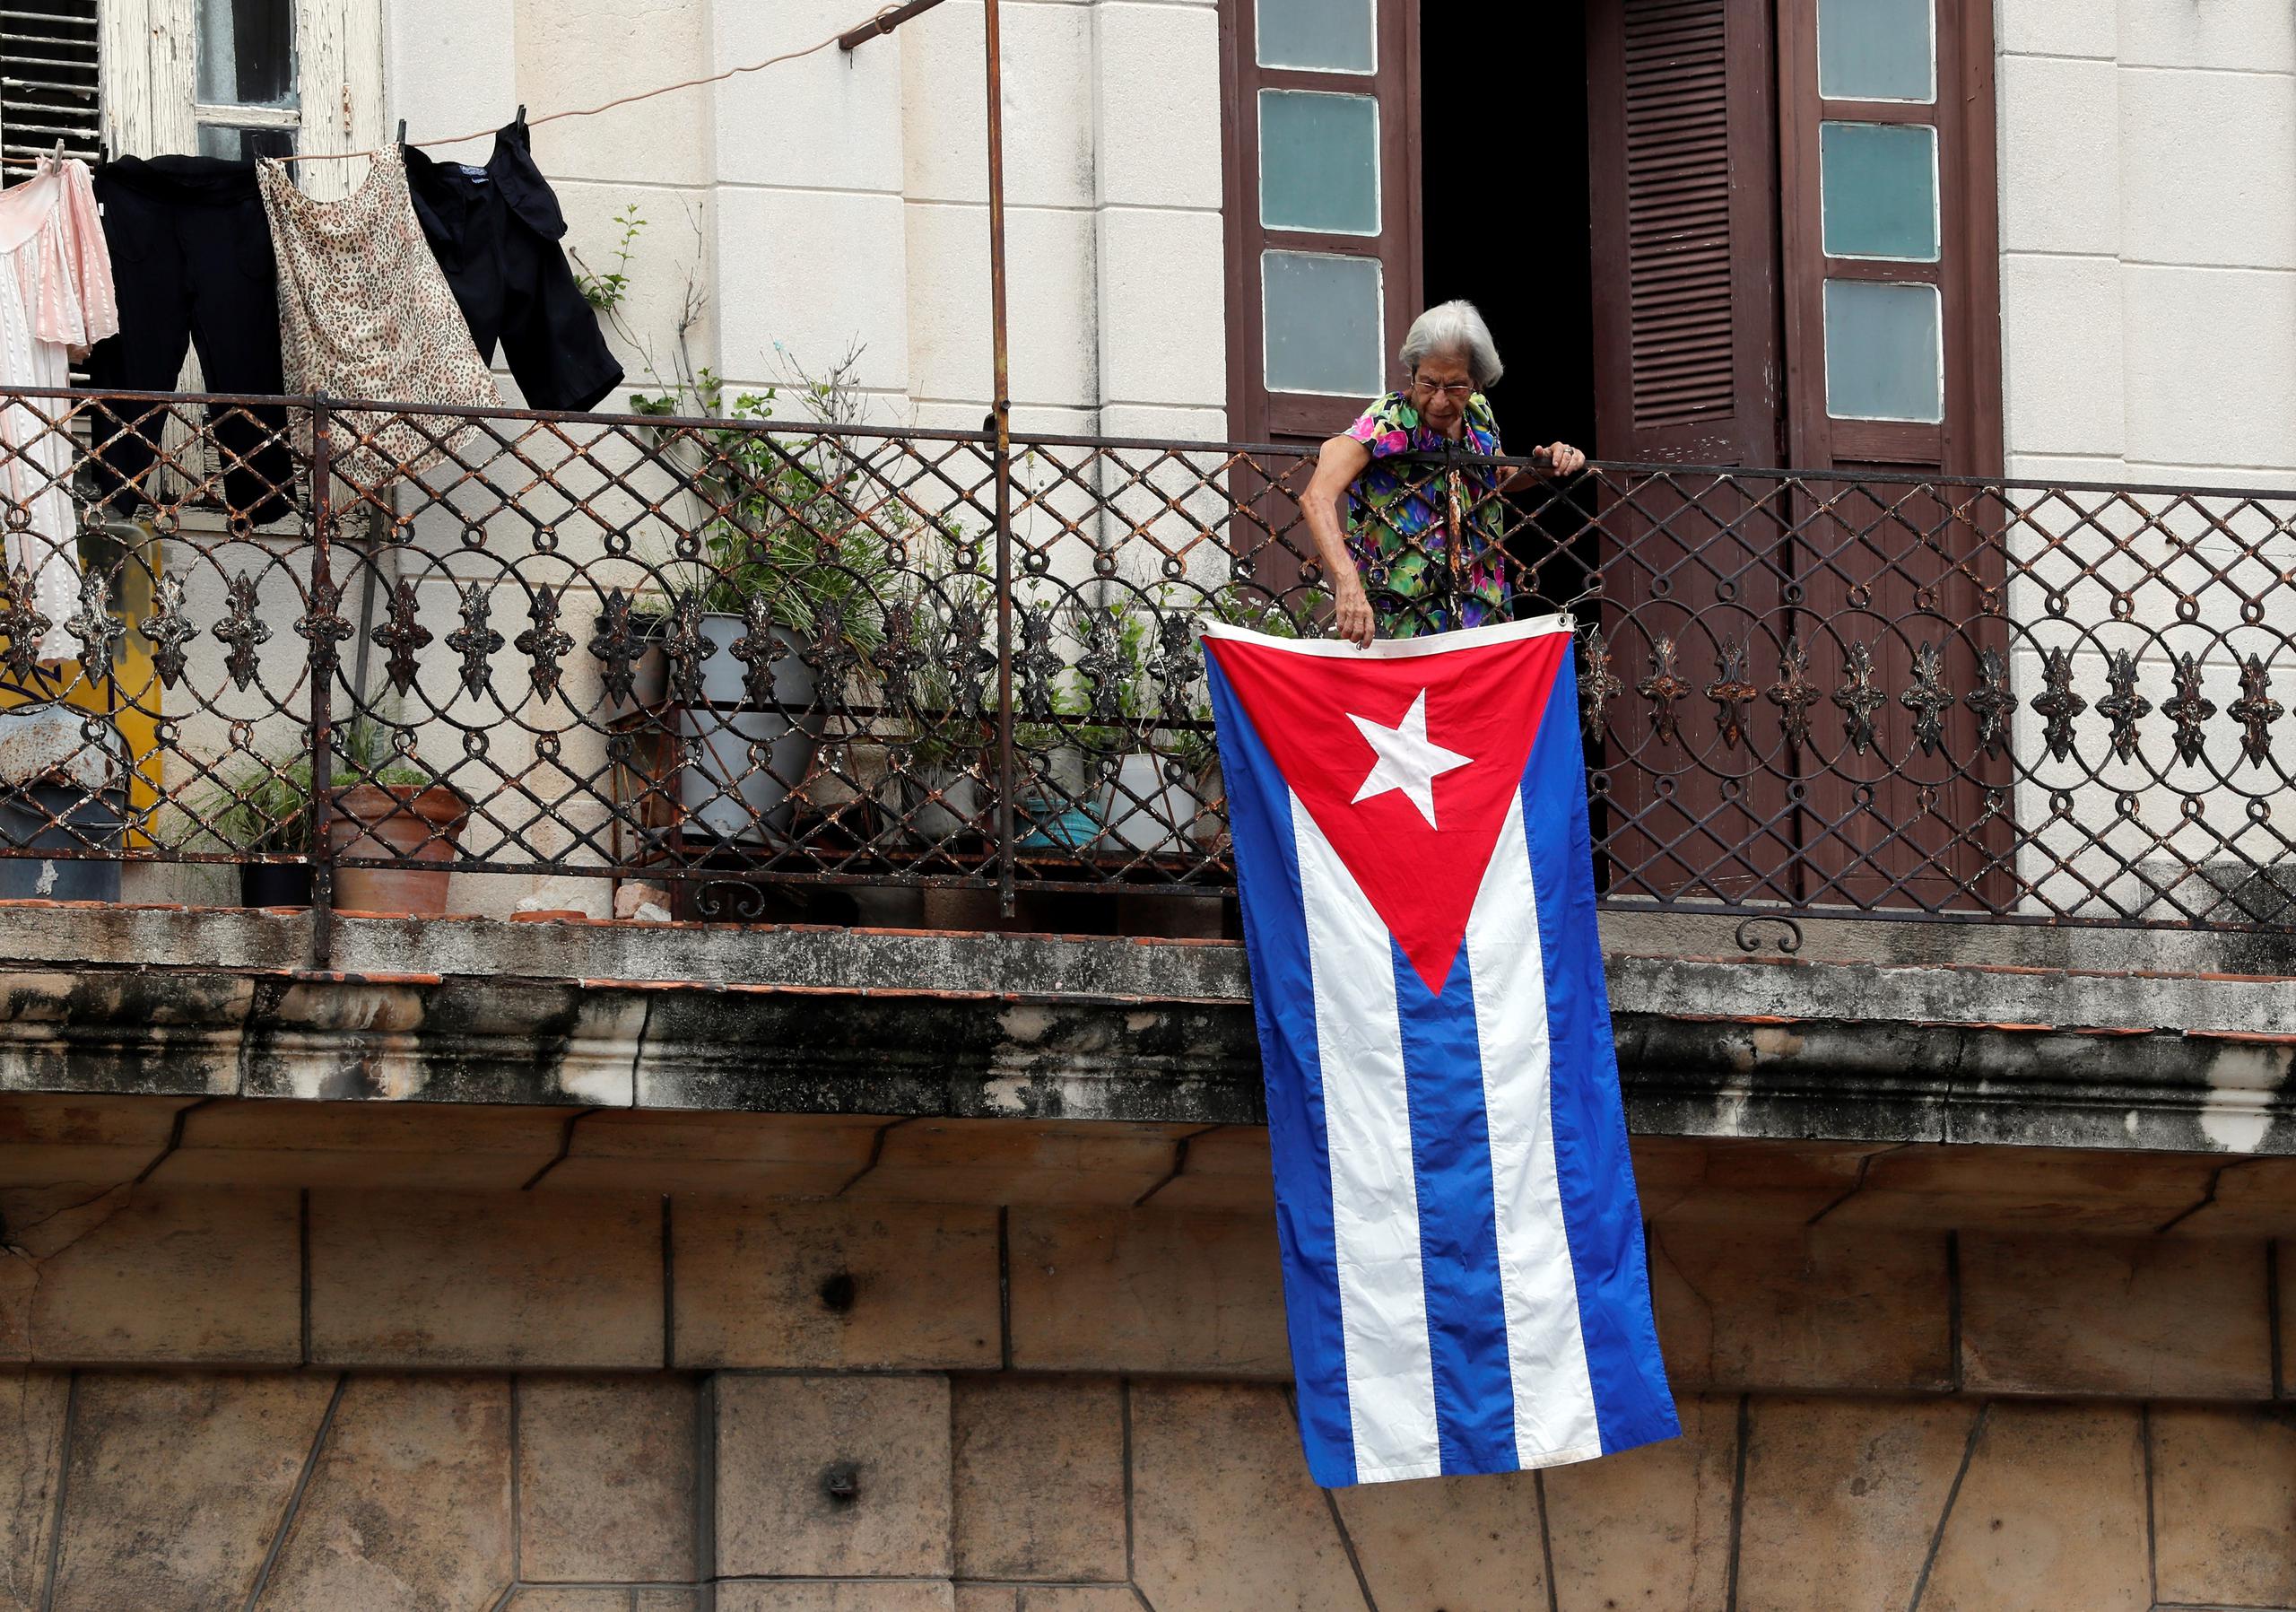 Una mujer sale al balcón donde se expone una bandera cubana, en La Habana, Cuba. EFE/Ernesto Mastrascusa
